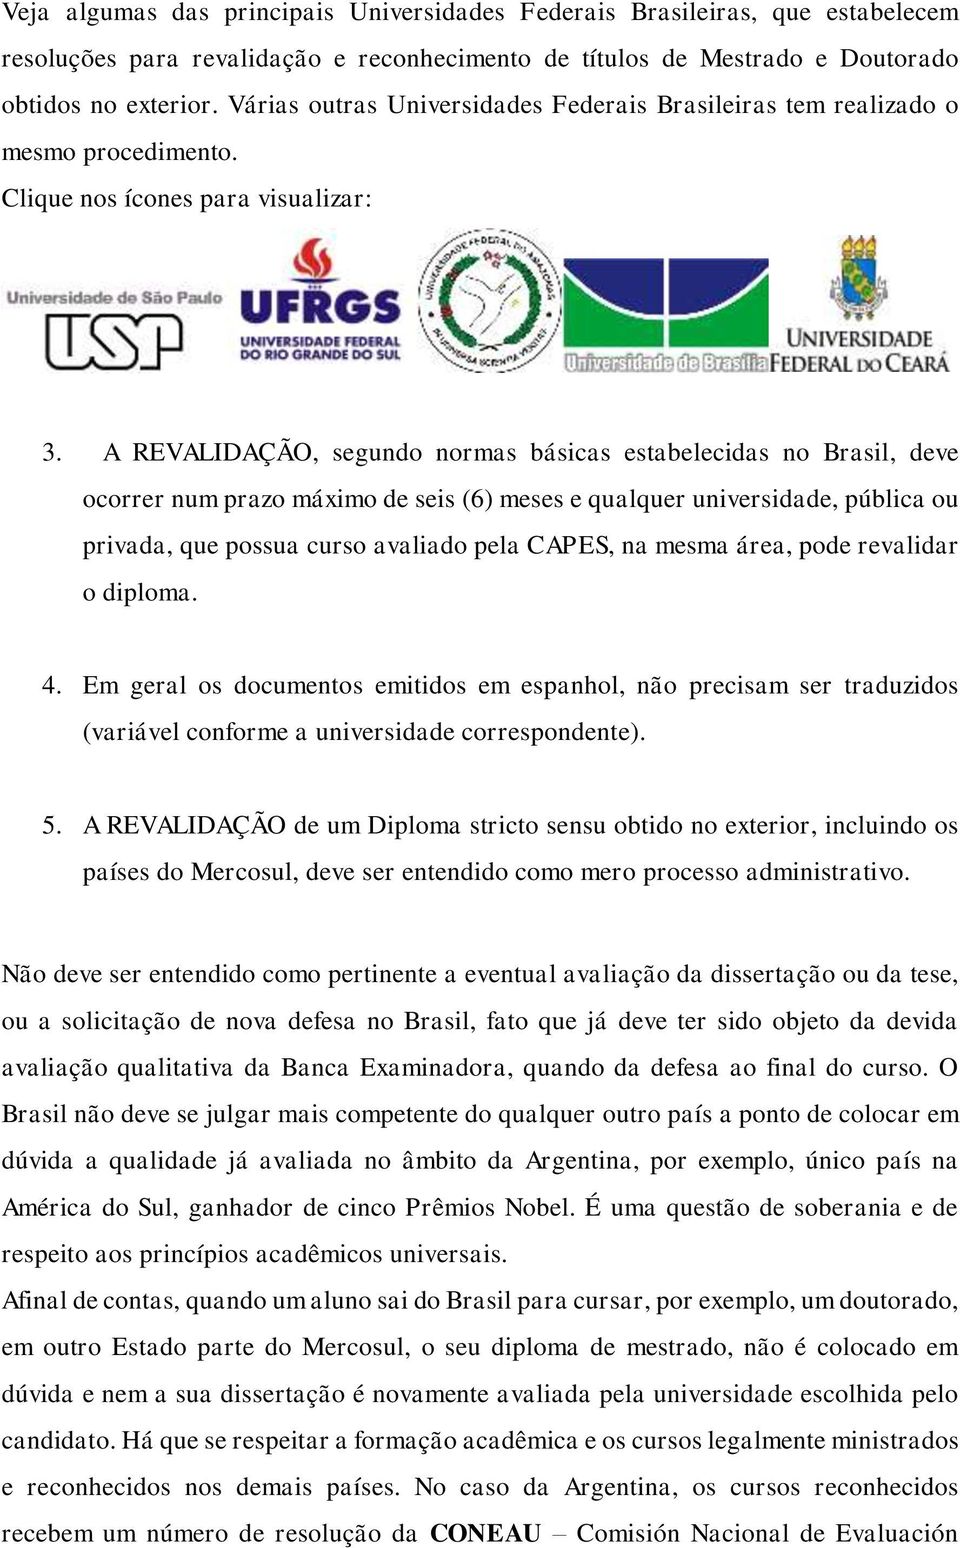 A REVALIDAÇÃO, segundo normas básicas estabelecidas no Brasil, deve ocorrer num prazo máximo de seis (6) meses e qualquer universidade, pública ou privada, que possua curso avaliado pela CAPES, na